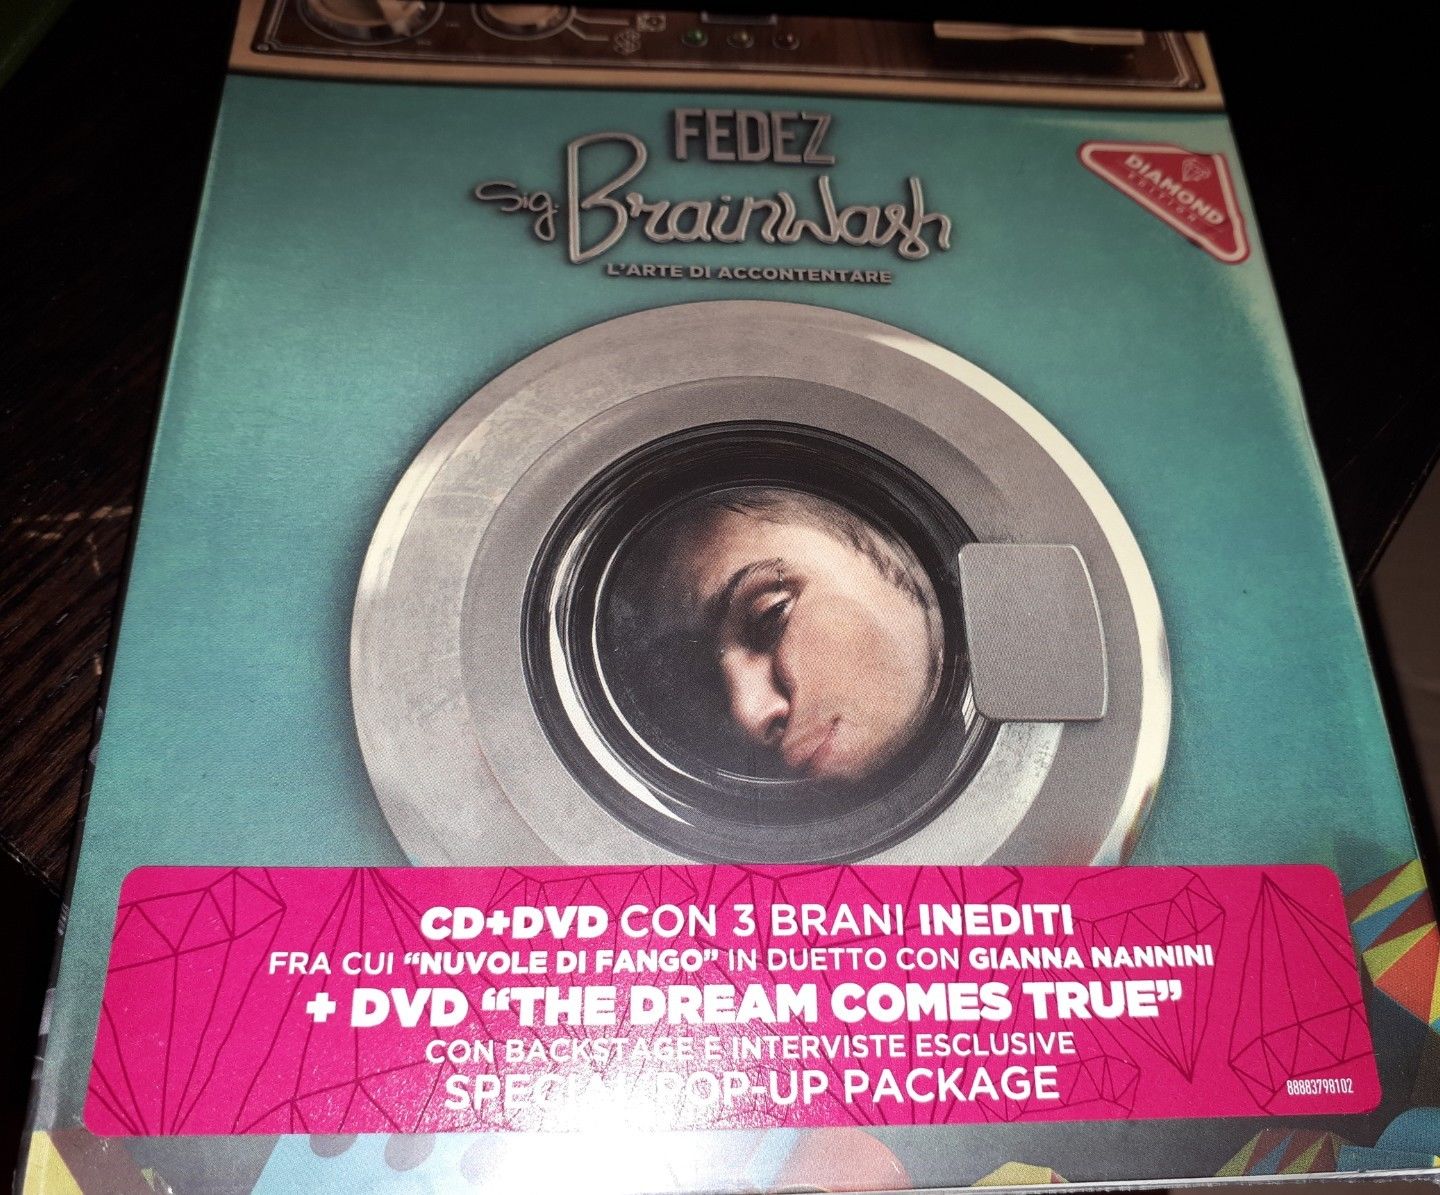 Fedez - Sig. Brainwash - L'Arte Di Accontentare CD+DVD